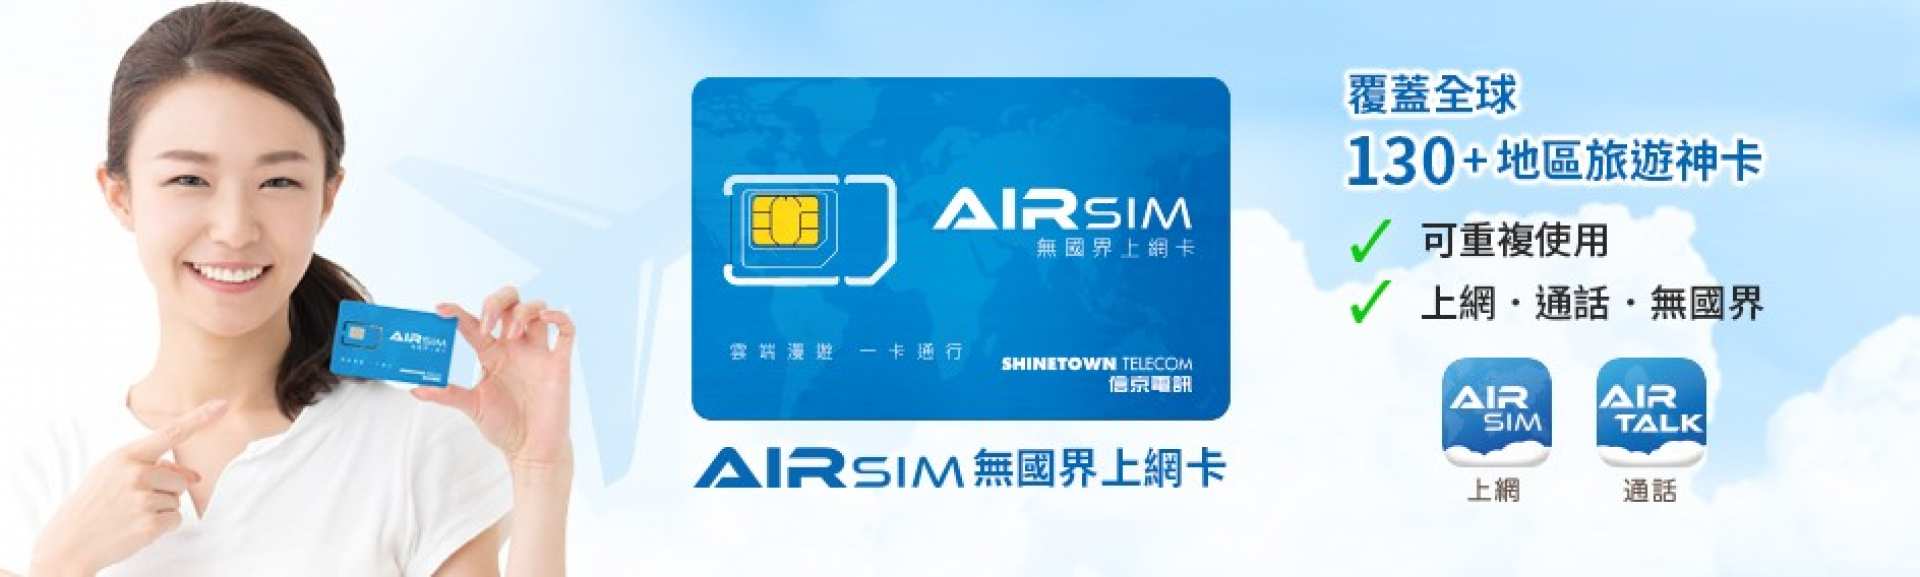 多國家-多國用網卡AIRSIM無國界上網卡| 桃園機場領取